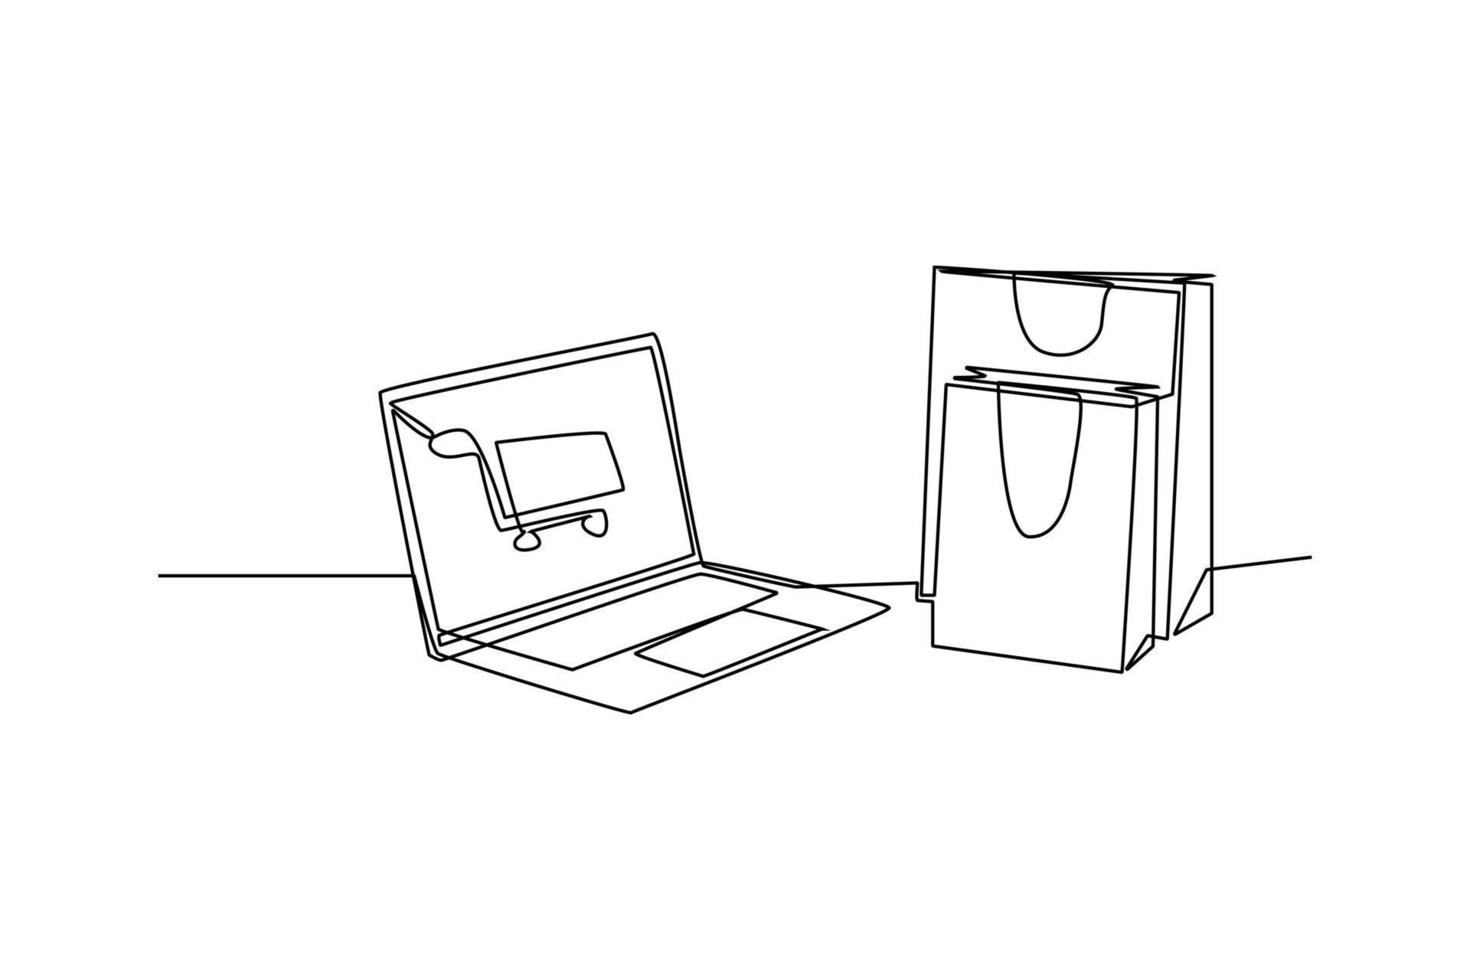 single een lijn tekening online boodschappen doen met laptop en karretje. e-commerce concept. doorlopend lijn trek ontwerp grafisch vector illustratie.